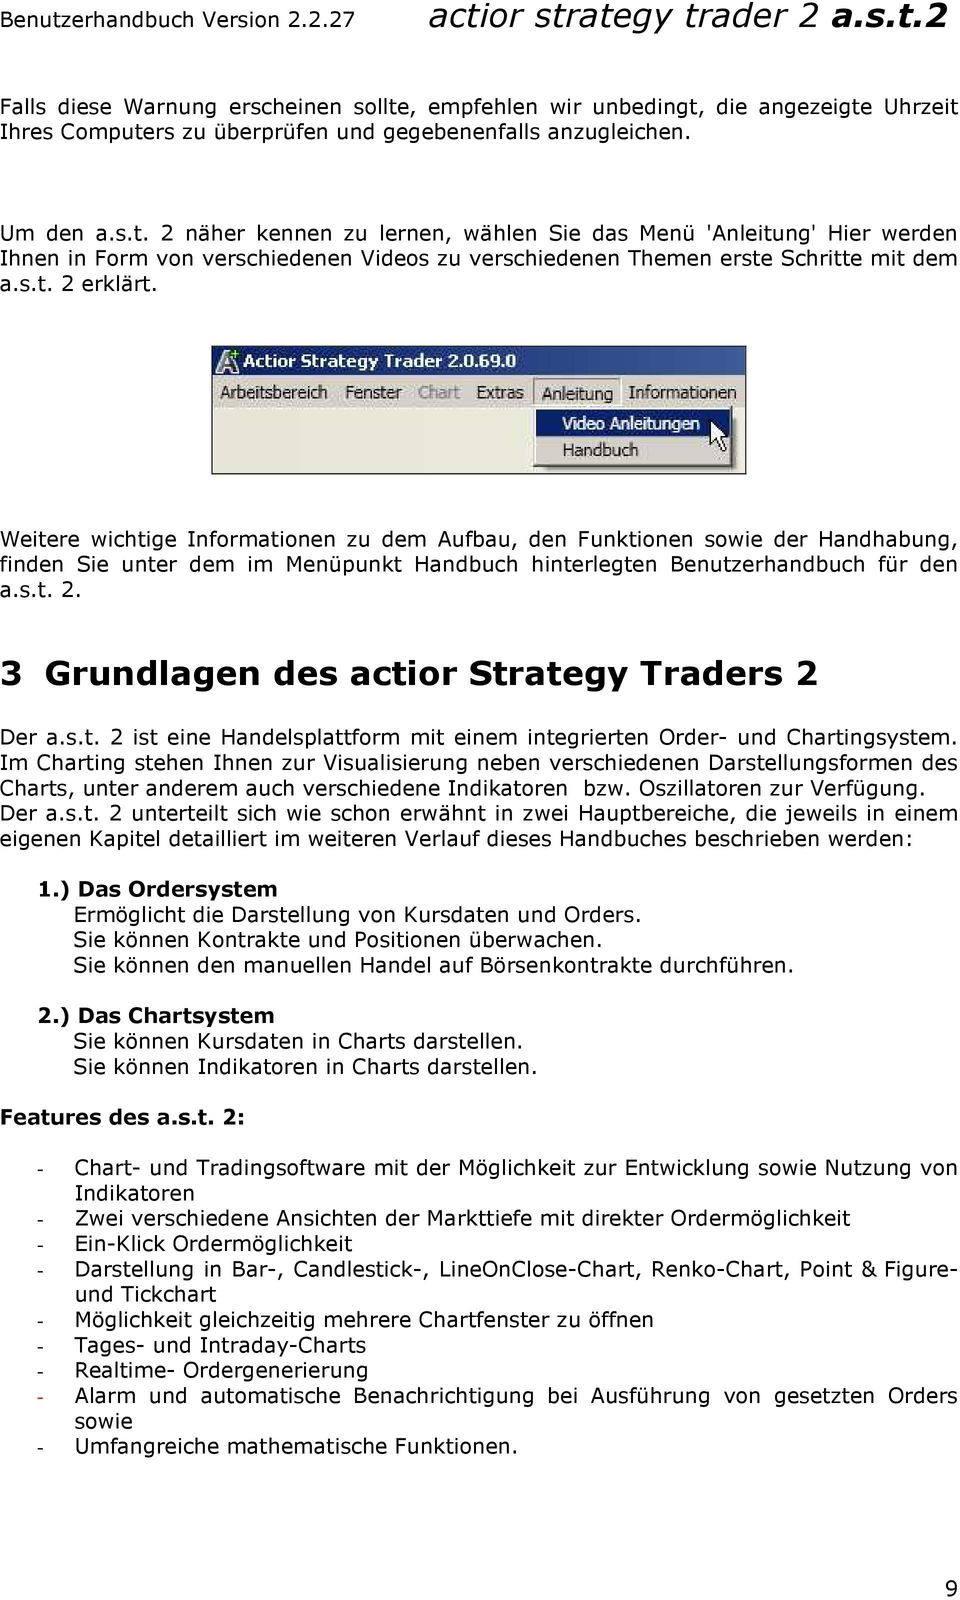 s.t. 2 ist eine Handelsplattform mit einem integrierten Order- und Chartingsystem.